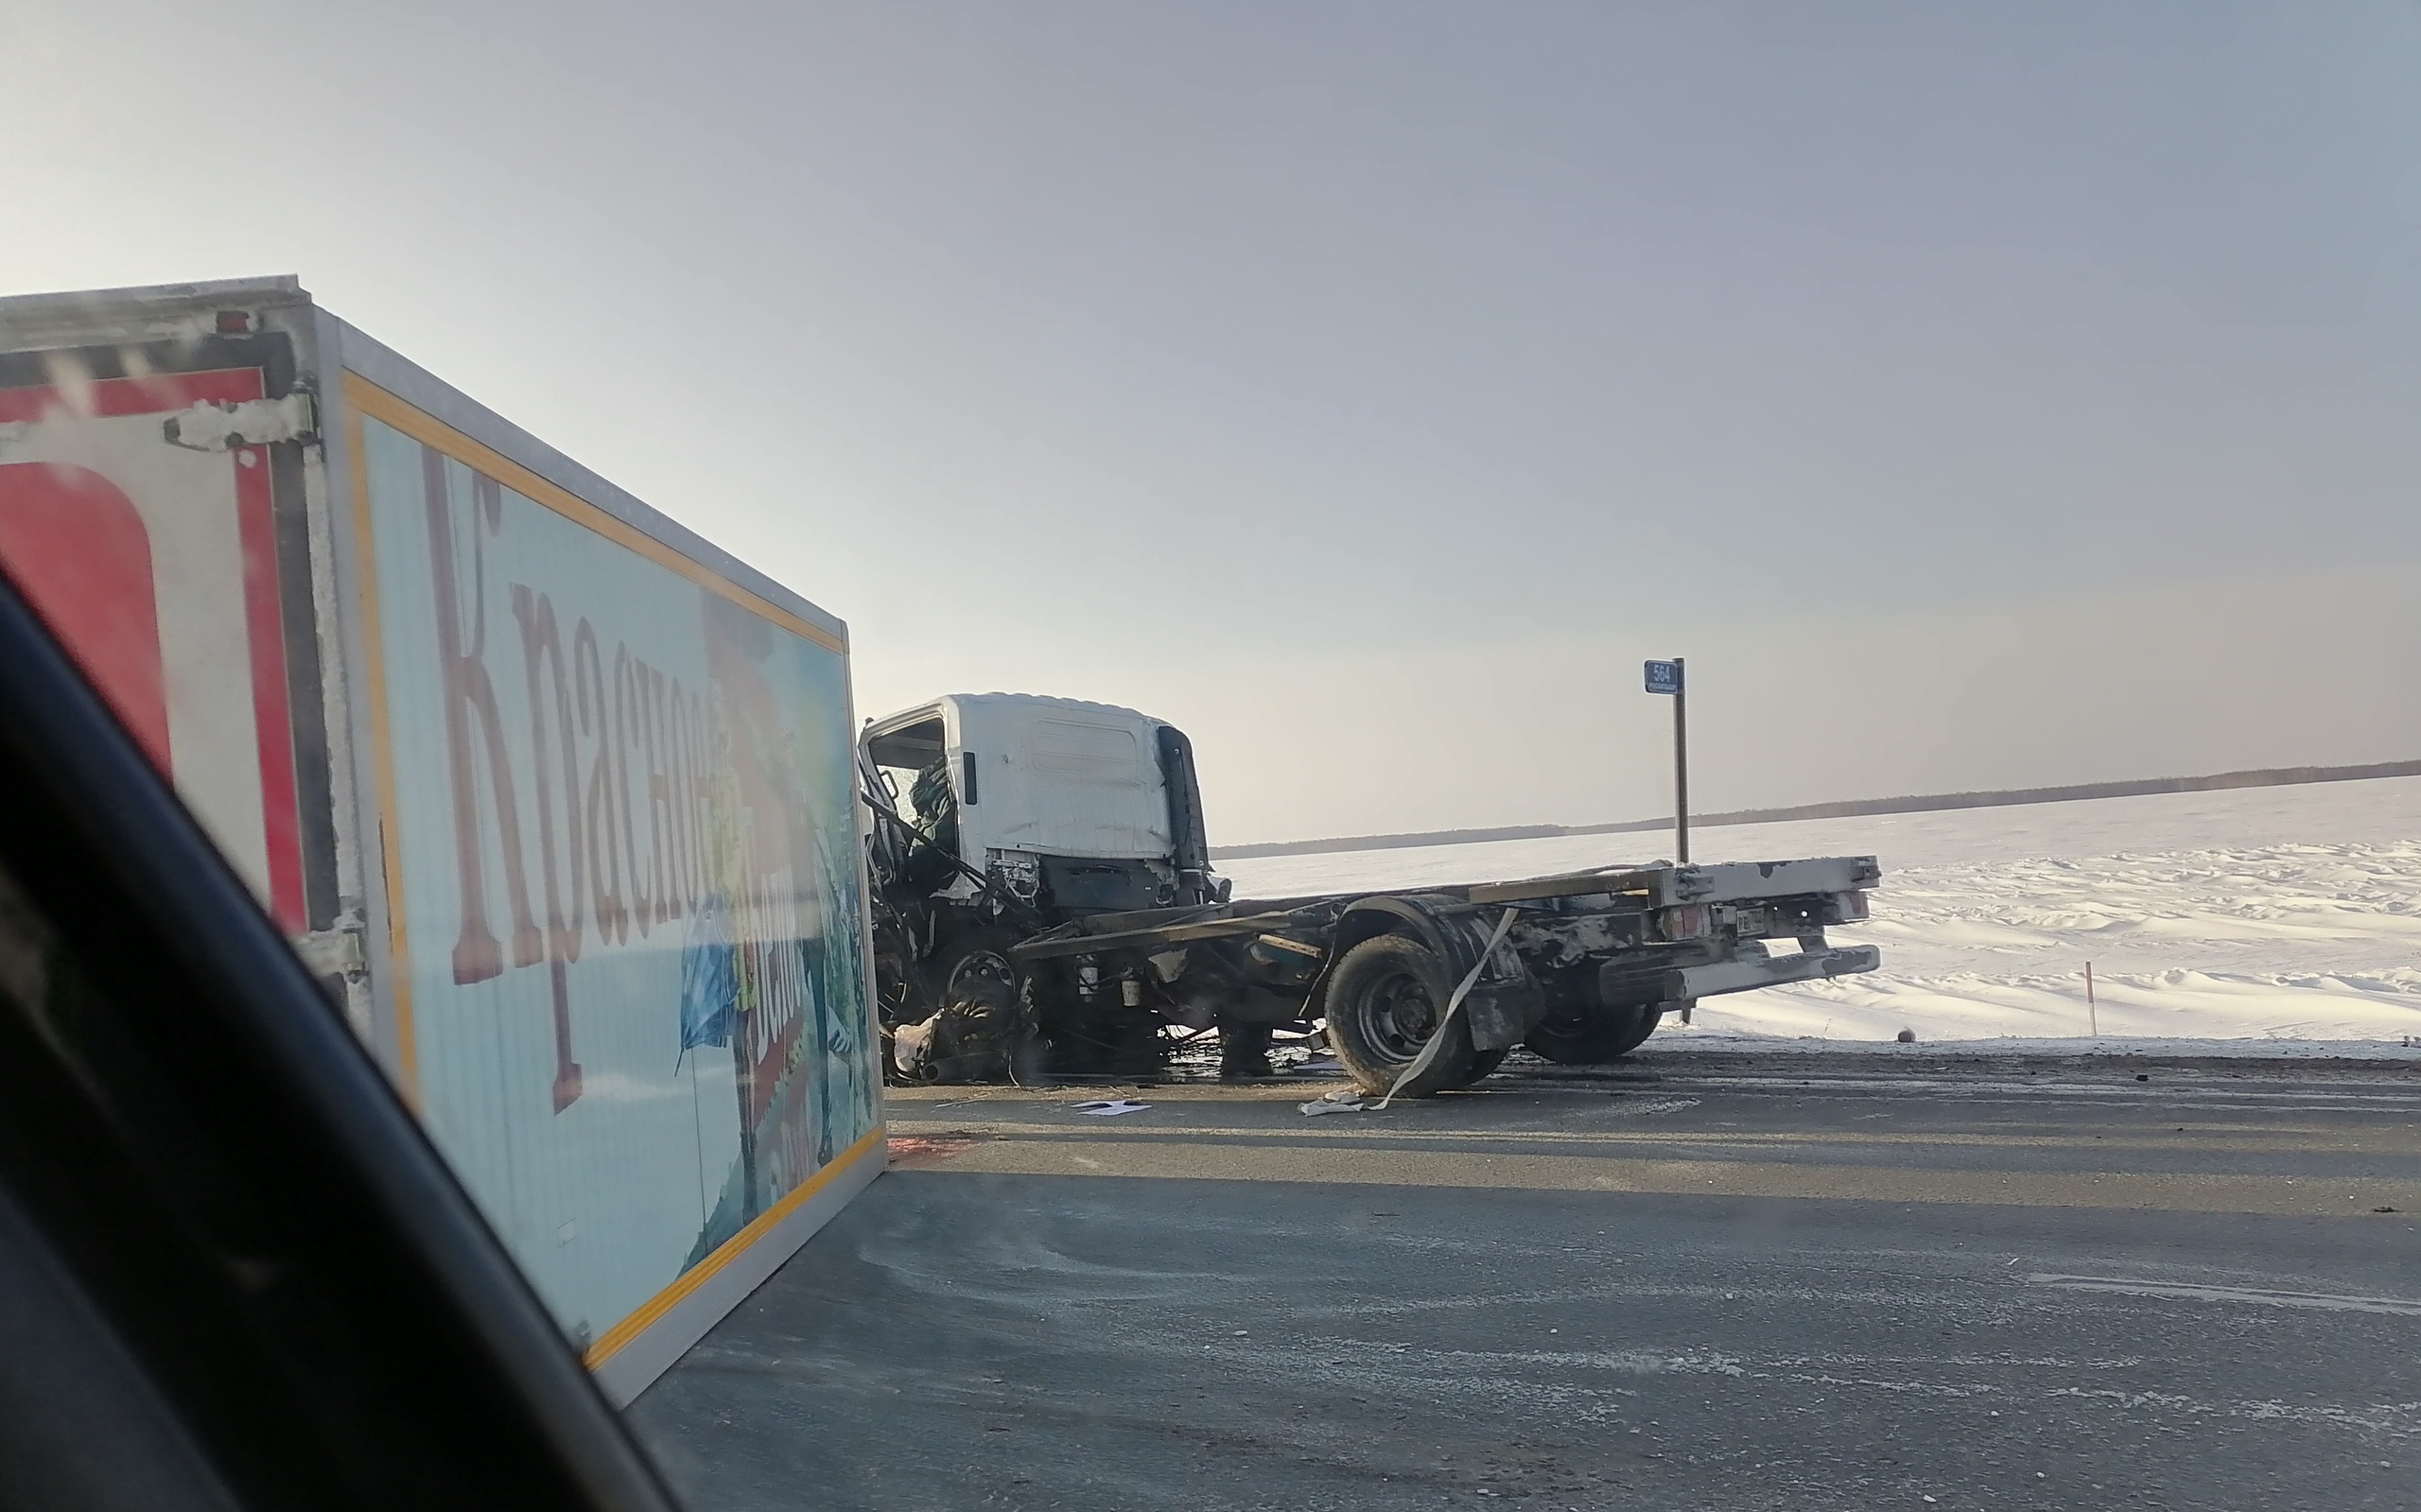 Mercedes разорвало на части от столкновения с фурой «Красное&Белое» под Омском #Новости #Общество #Омск